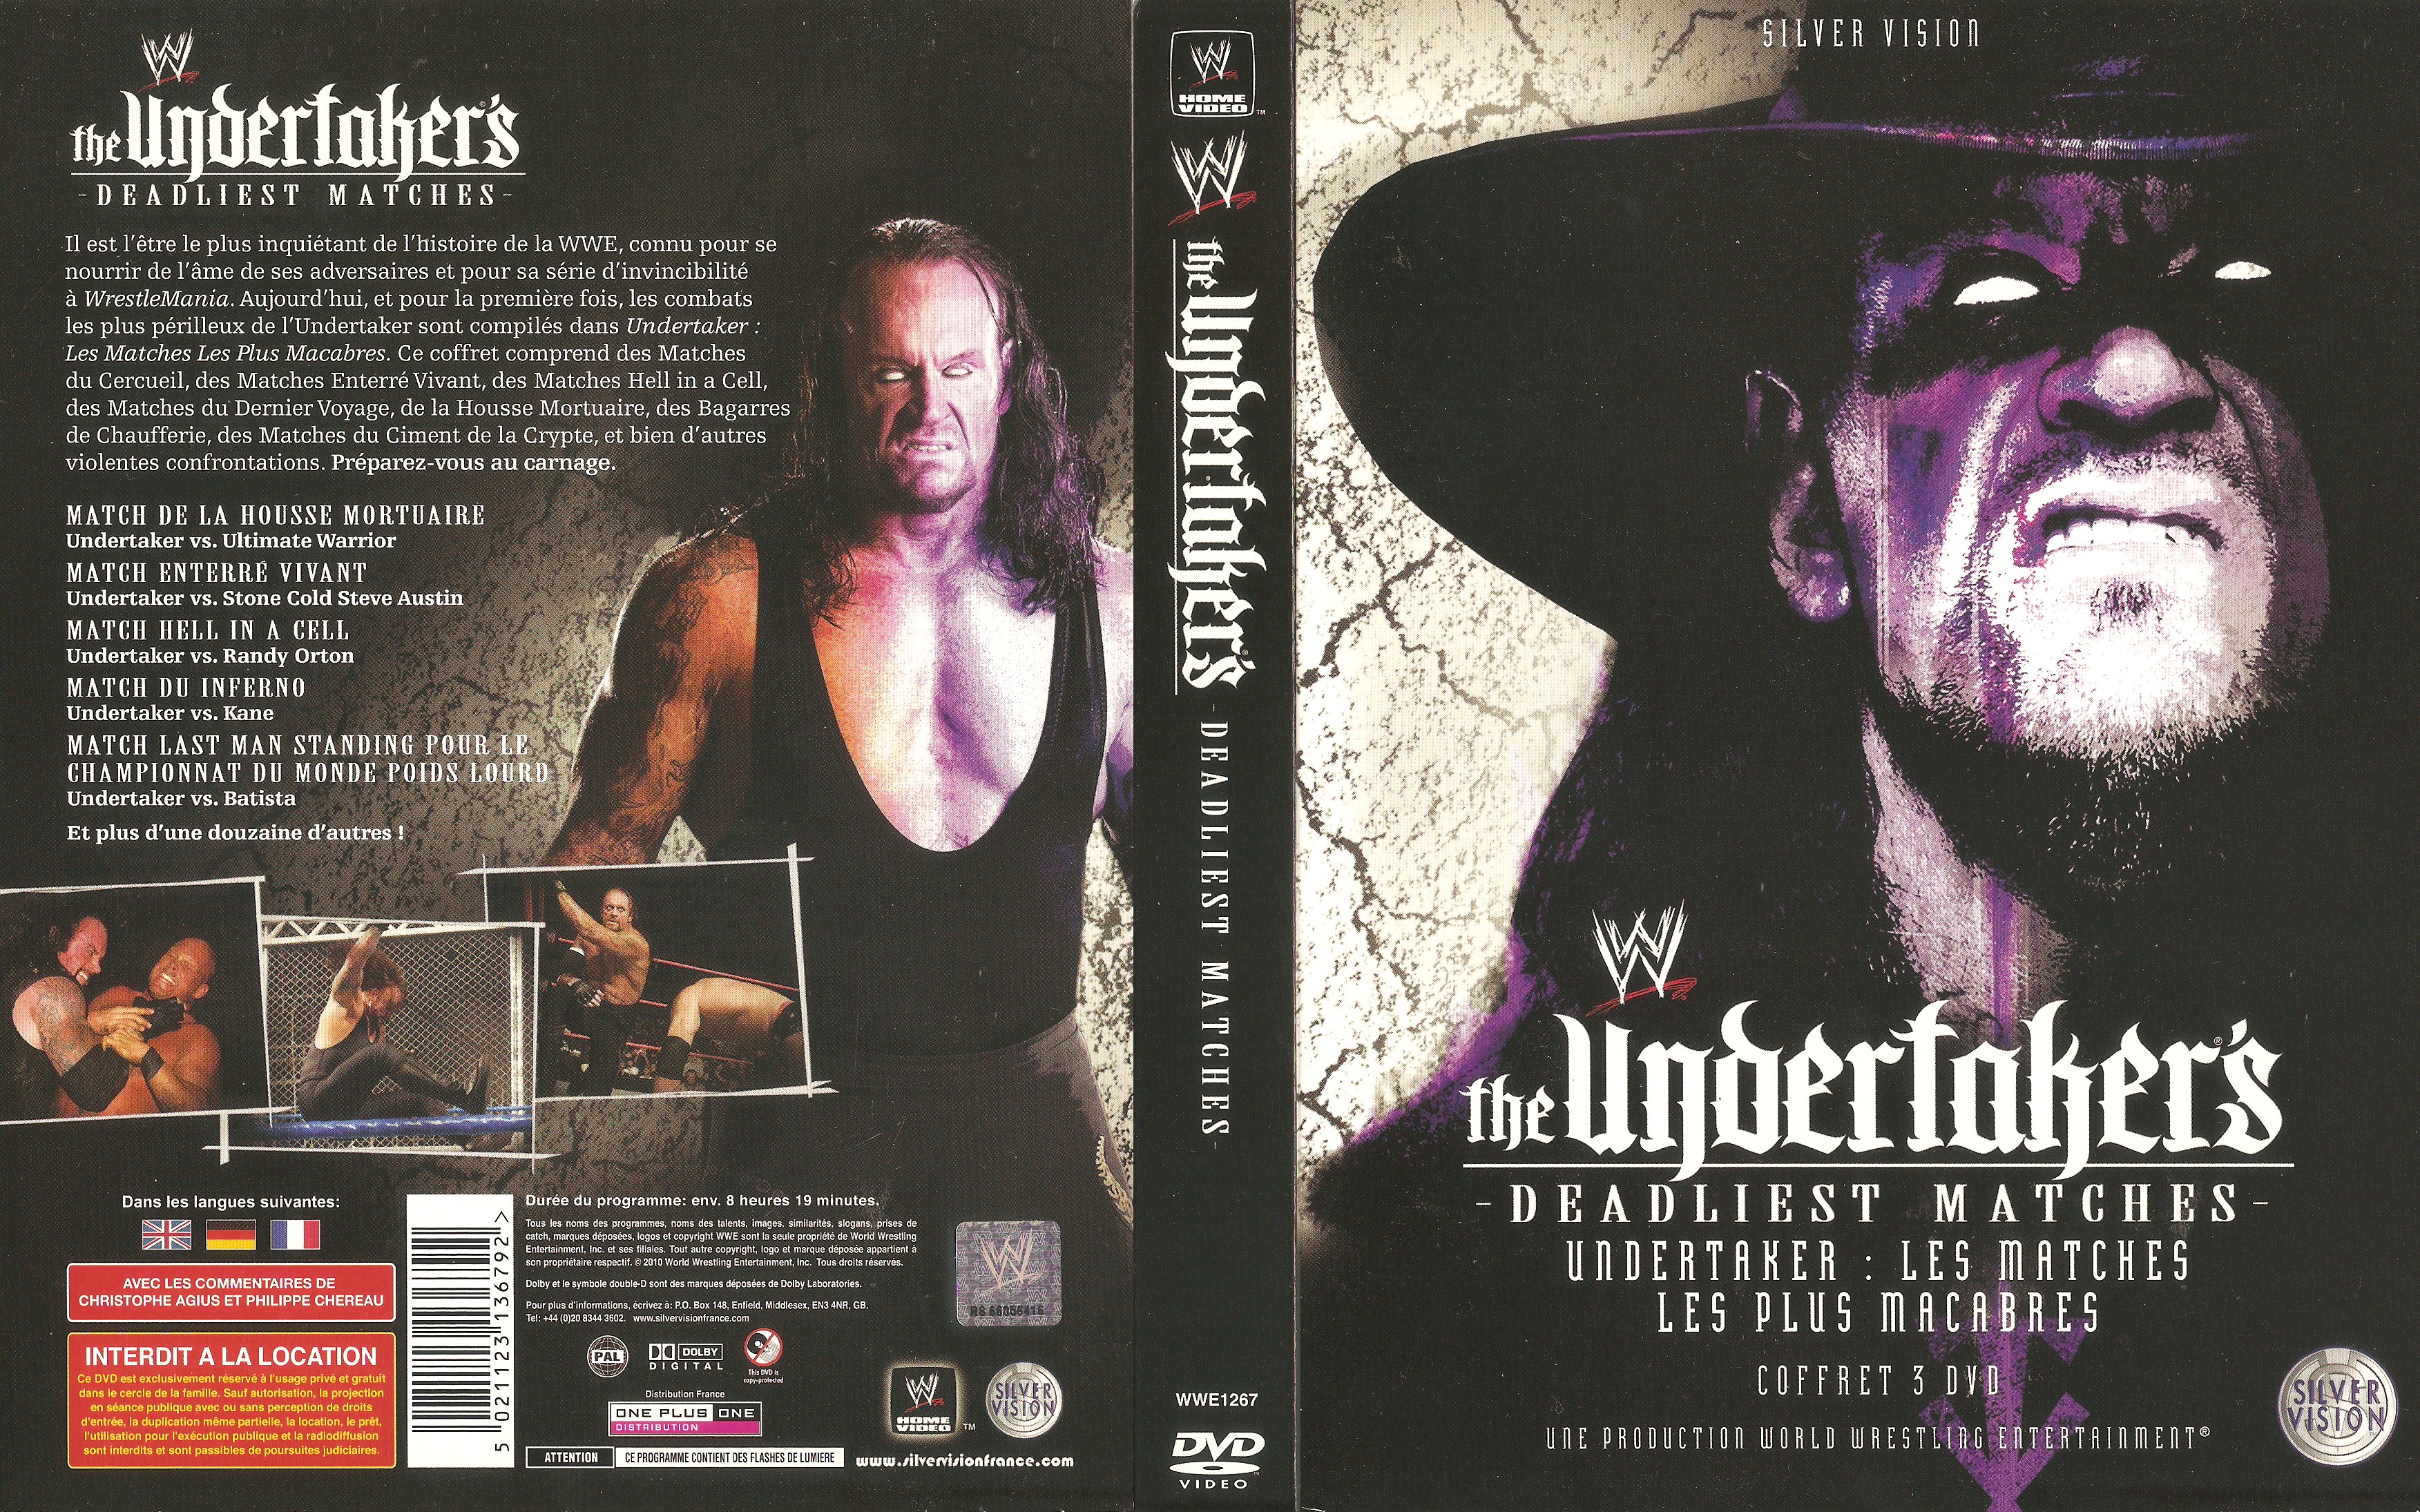 Jaquette DVD WWE Undertaker Deadliest Matches